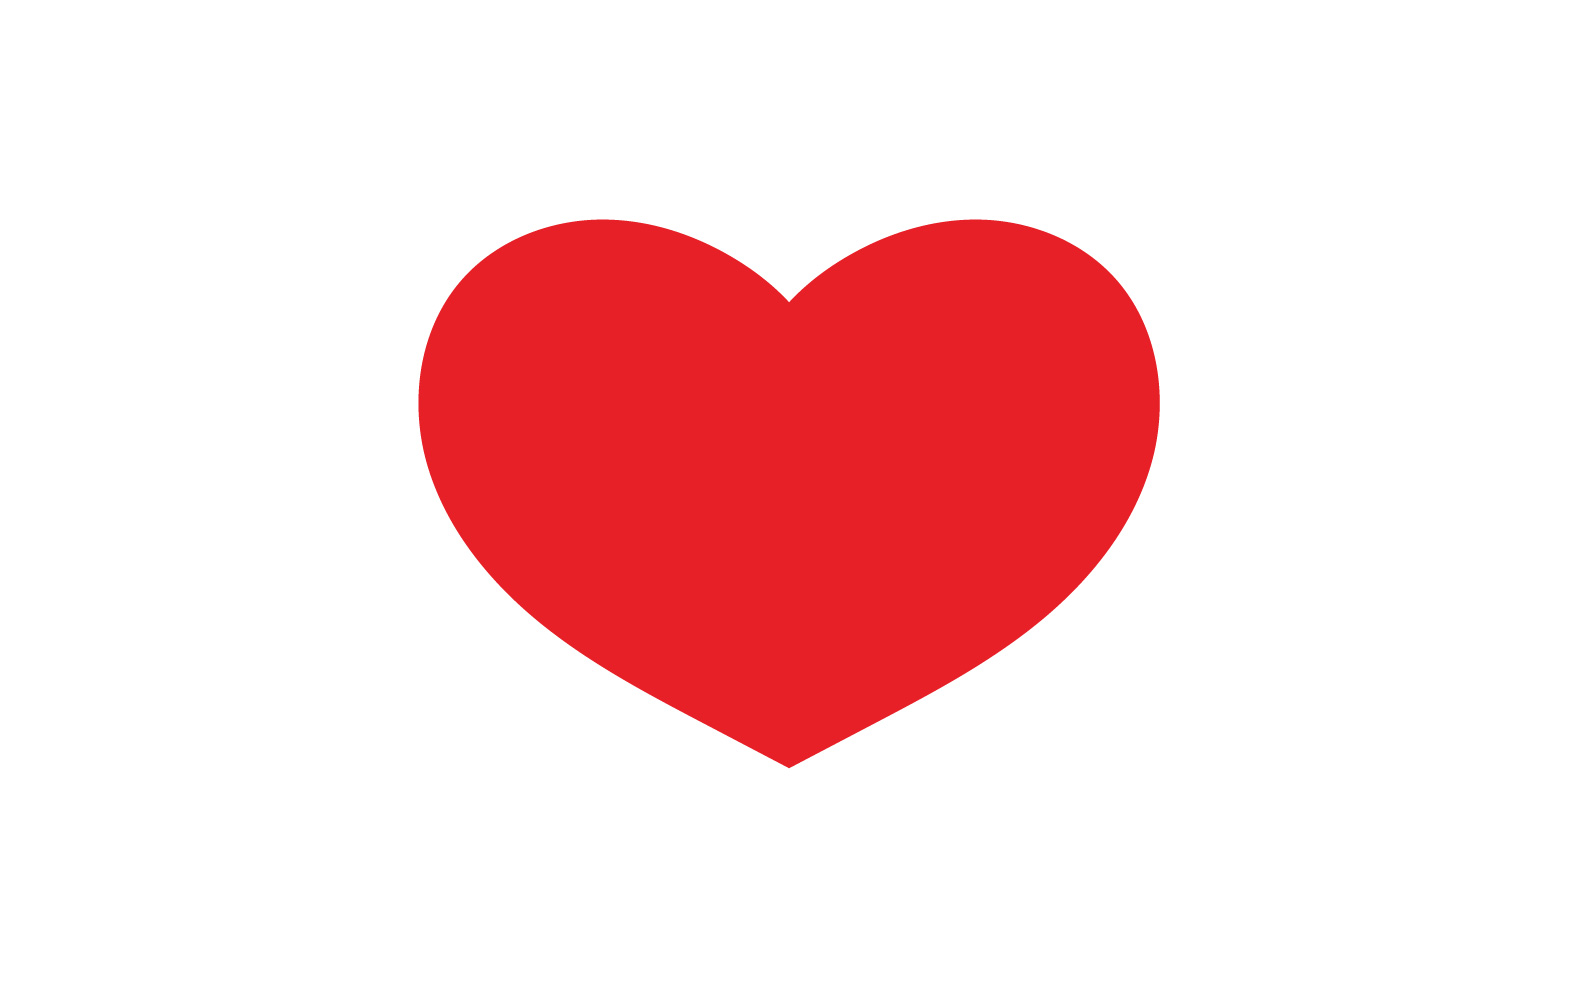 Heart Love Clipart Symbol Icon Vector Illustration v9